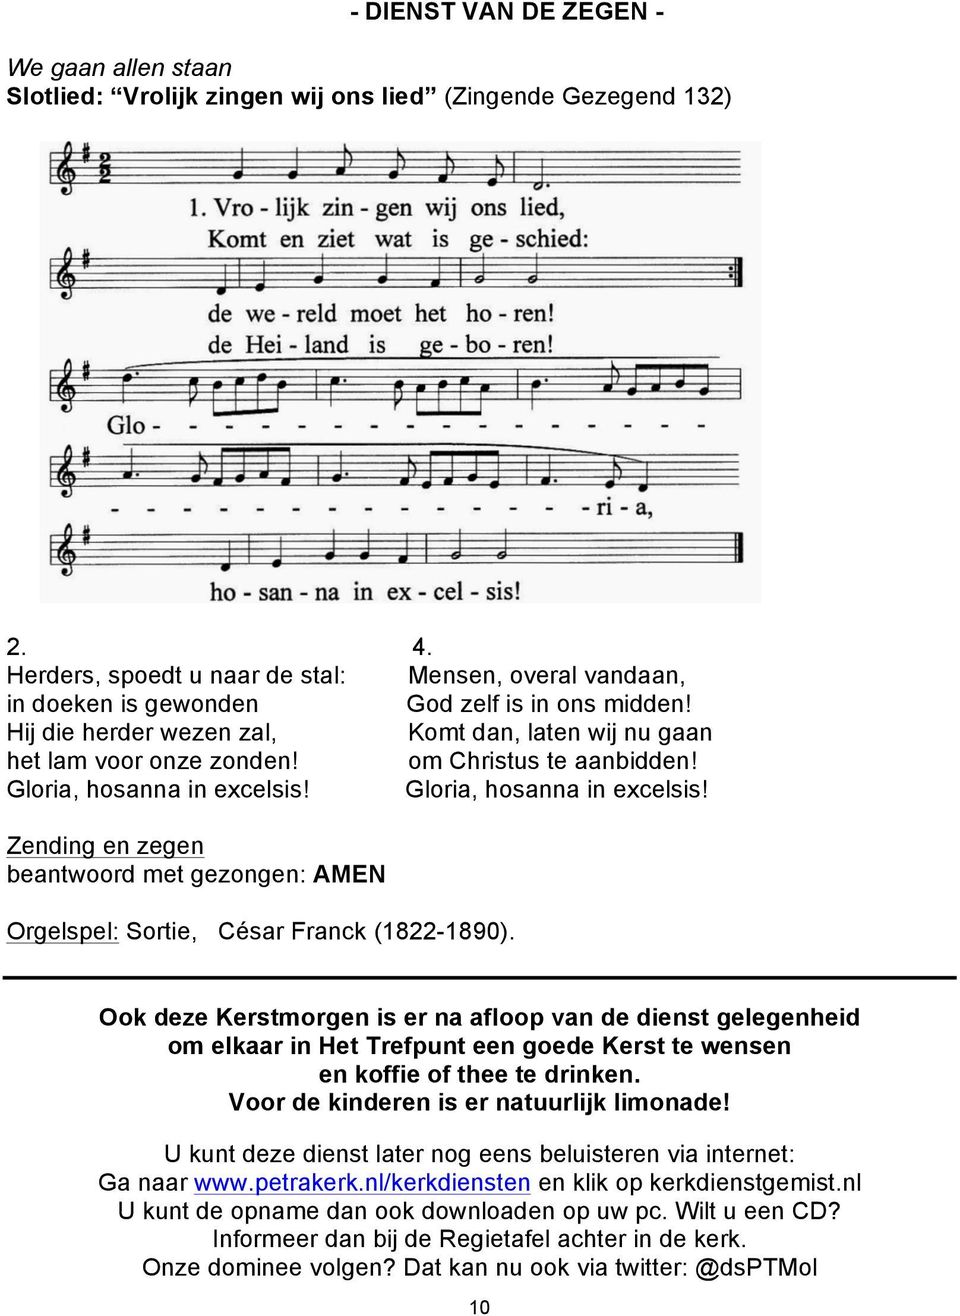 om Christus te aanbidden! Gloria, hosanna in excelsis! Gloria, hosanna in excelsis! Zending en zegen beantwoord met gezongen: AMEN Orgelspel: Sortie, César Franck (1822-1890).